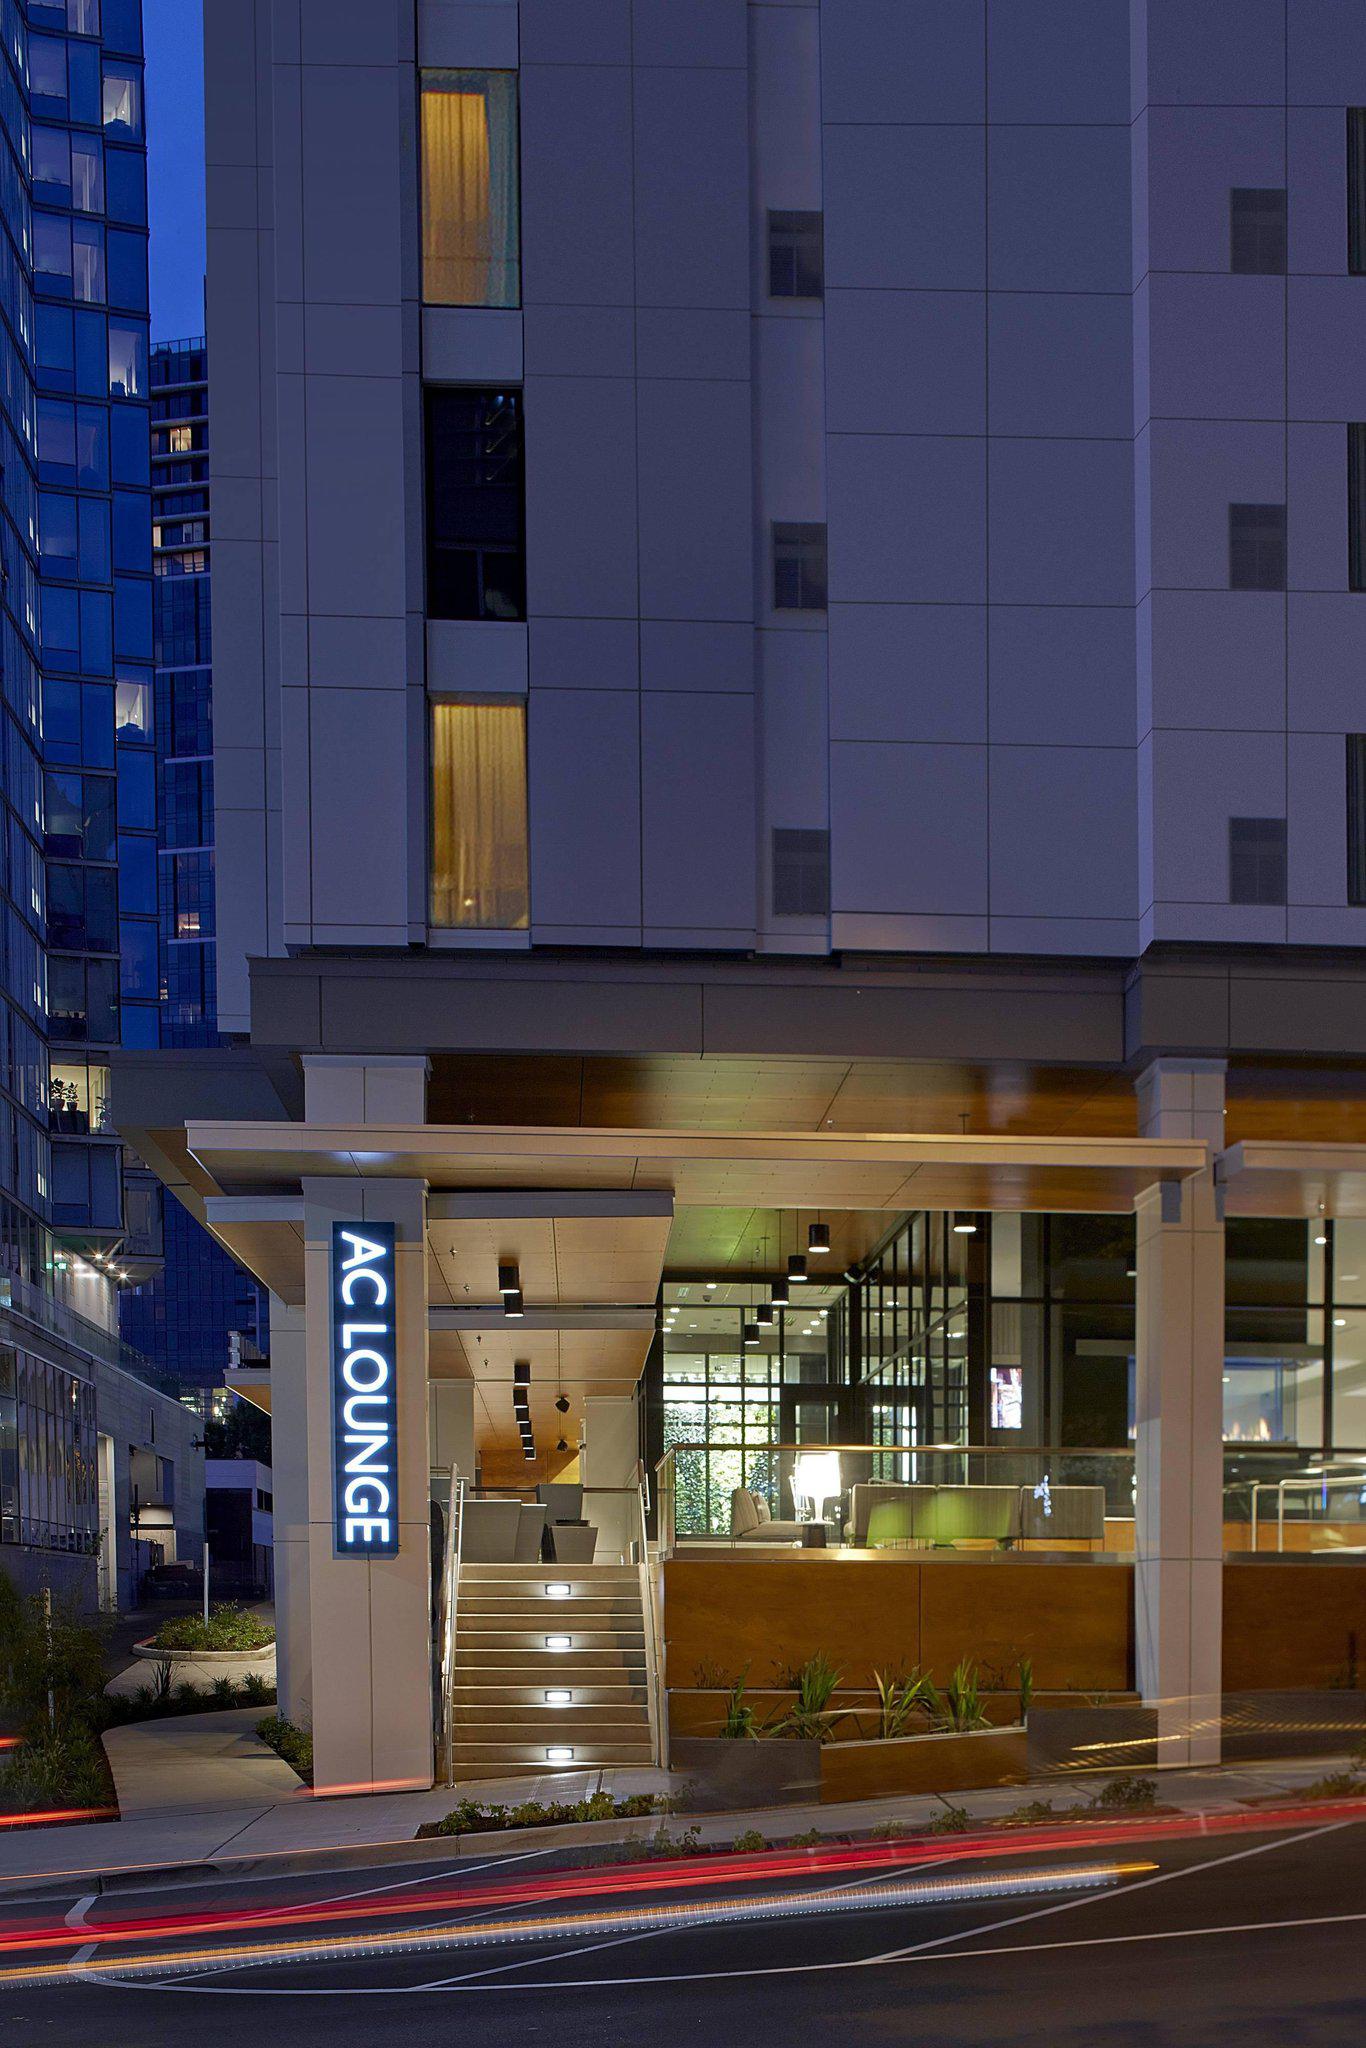 AC Hotel by Marriott Seattle Bellevue/Downtown